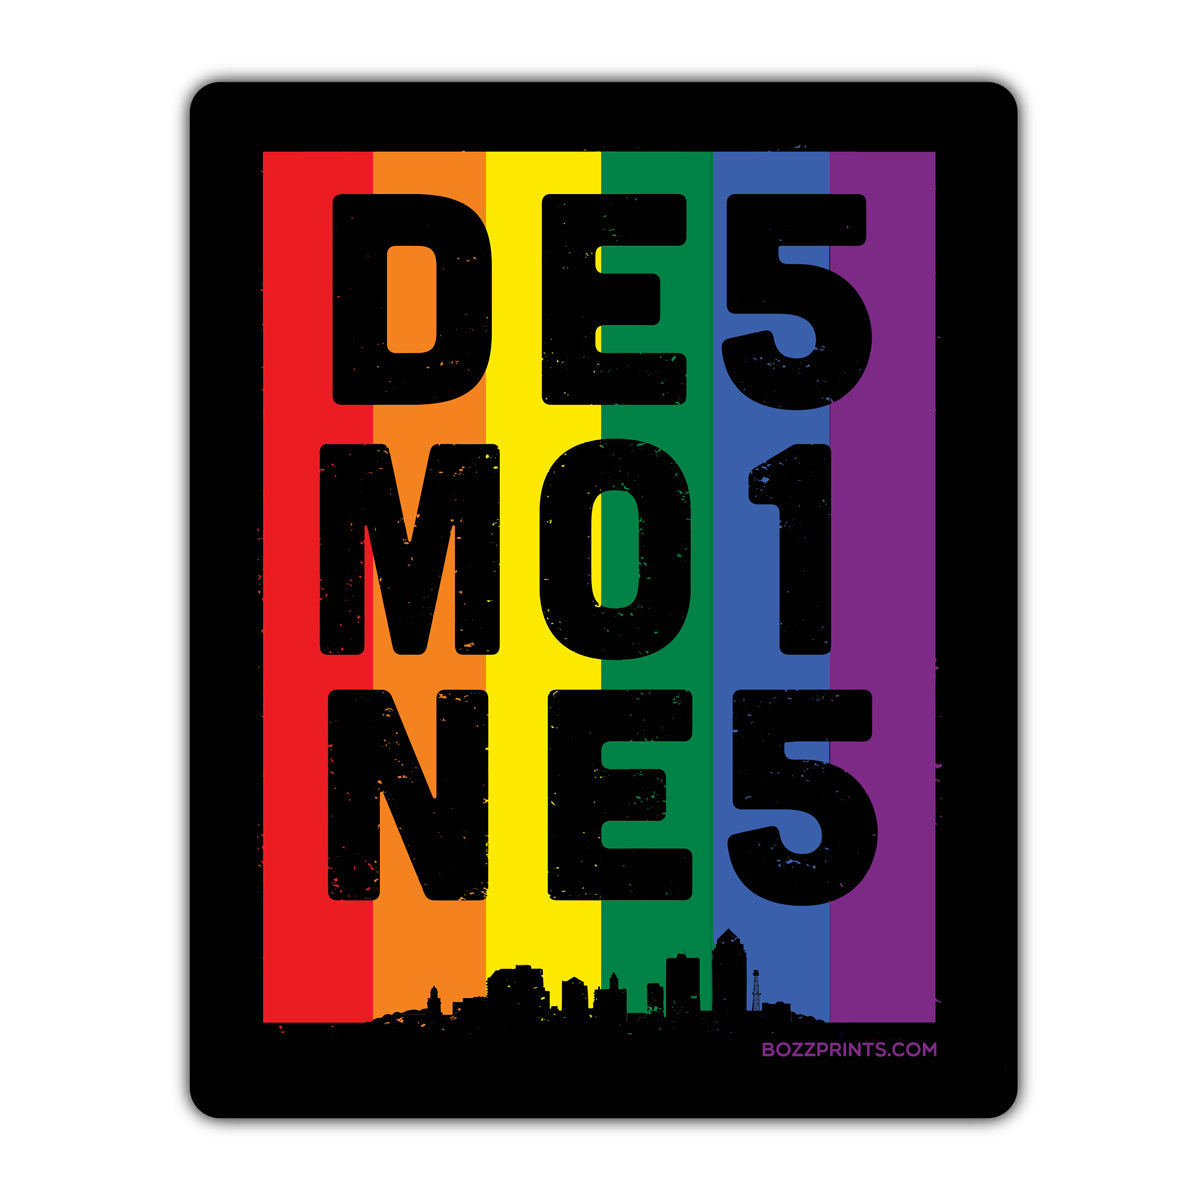 Des Moines 515 Pride - Bozz Prints